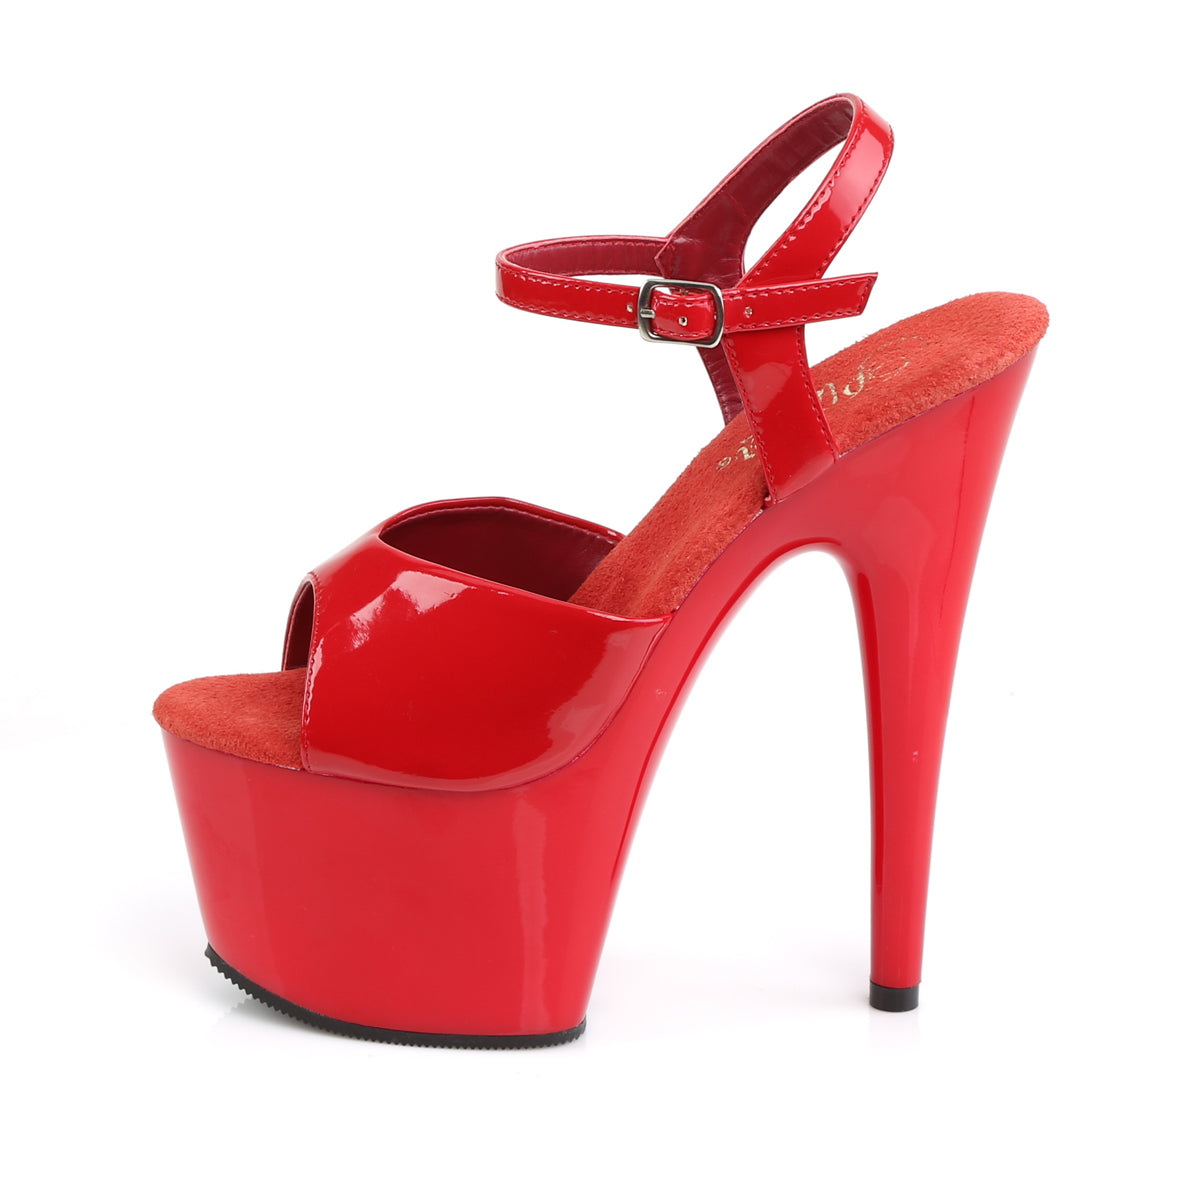 ADORE-709 Red/Red Platform Sandal Pleaser